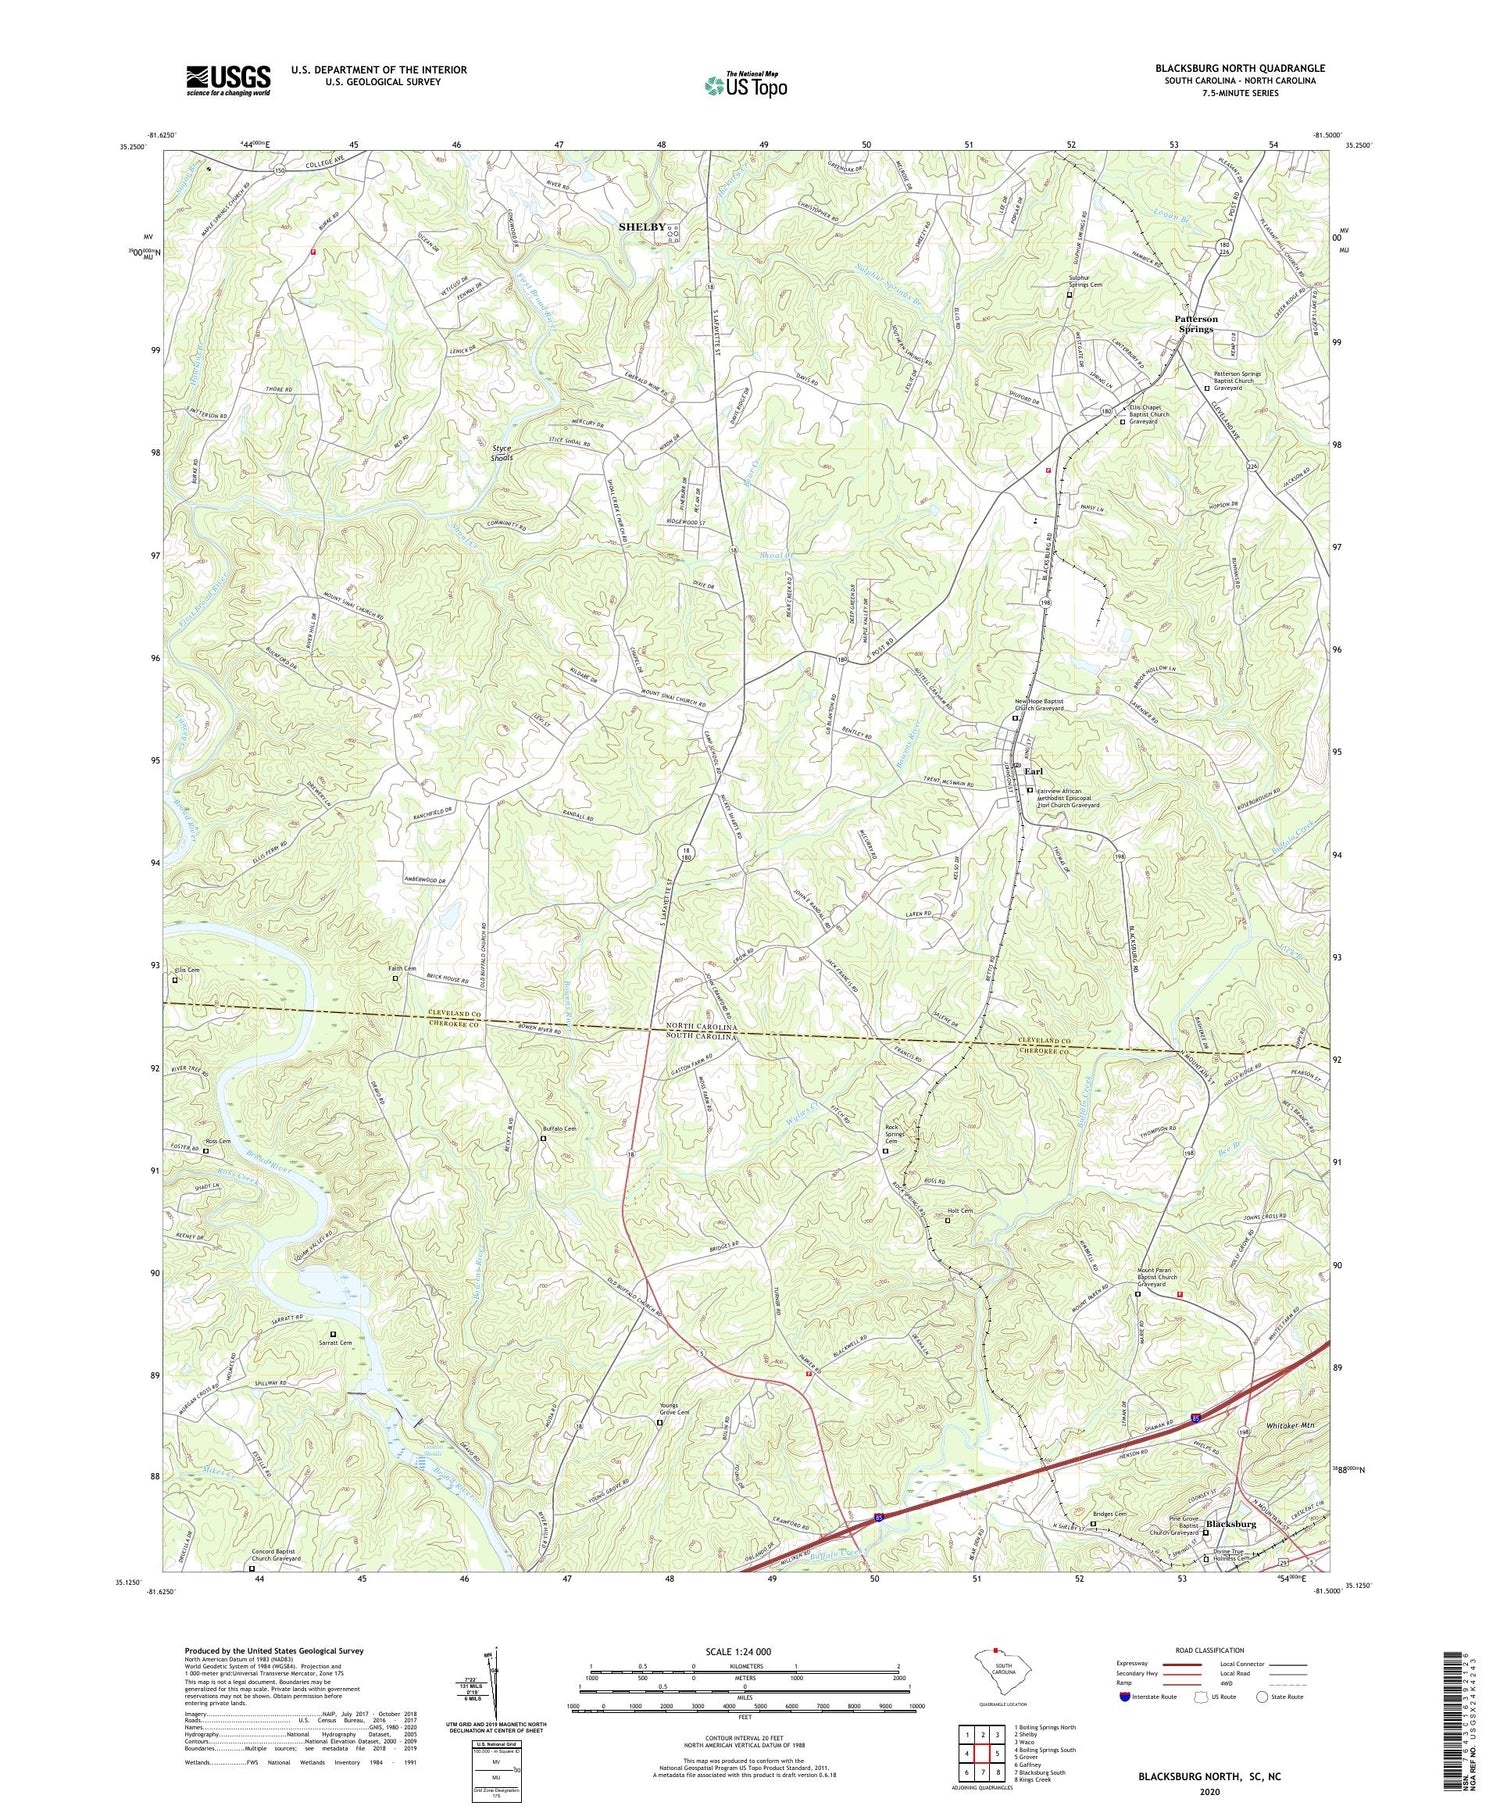 Blacksburg North South Carolina US Topo Map Image